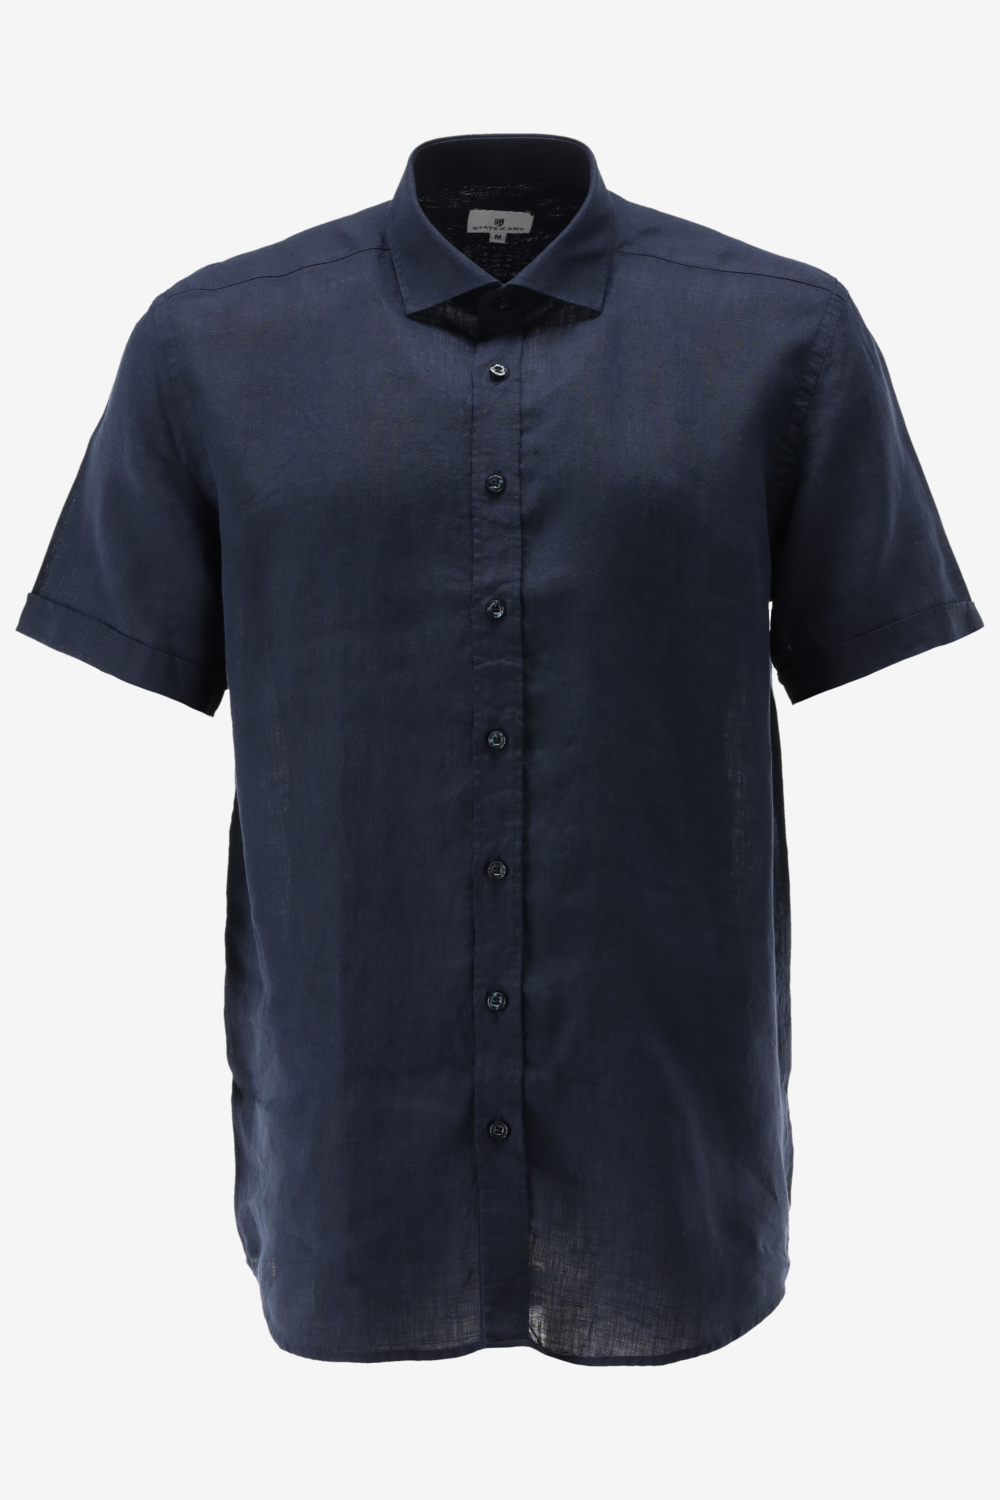 State of Art - Short Sleeve Overhemd Linnen Navy - Maat XXL - Regular-fit